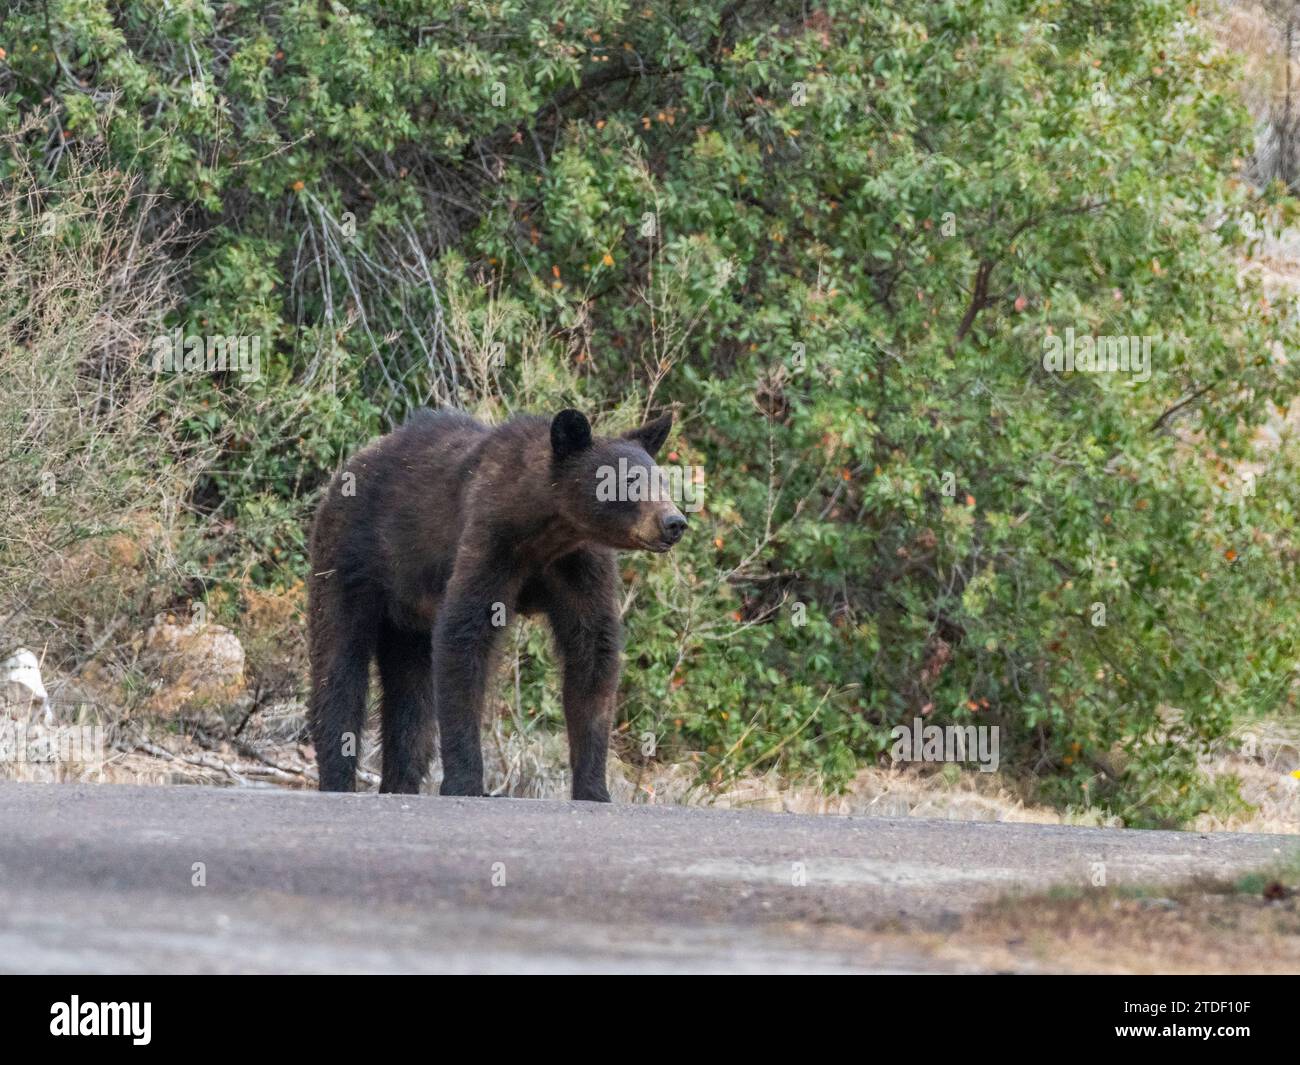 Ours noir américain femelle adulte (Ursus americanus), parc national de Big Bend, Texas, États-Unis d'Amérique, Amérique du Nord Banque D'Images